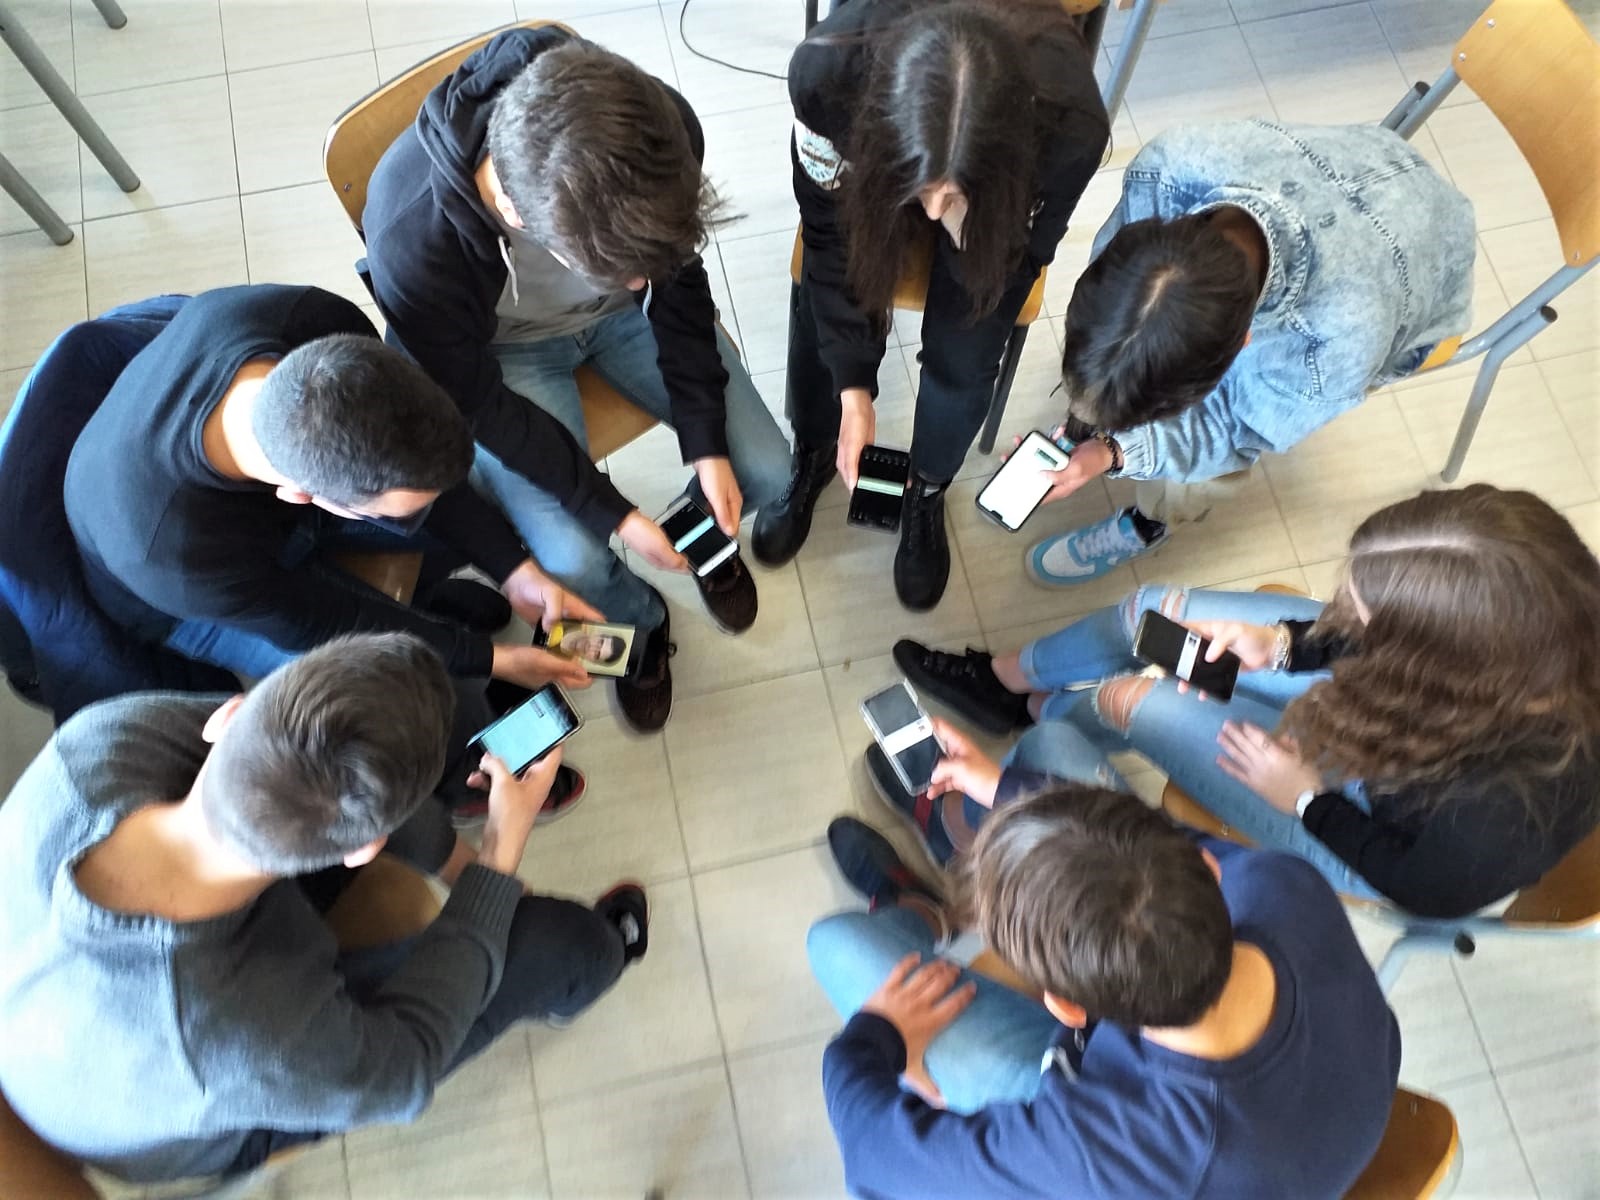 Arzachena: #fattidiparole, Comune e studenti contro il cyberbullismo